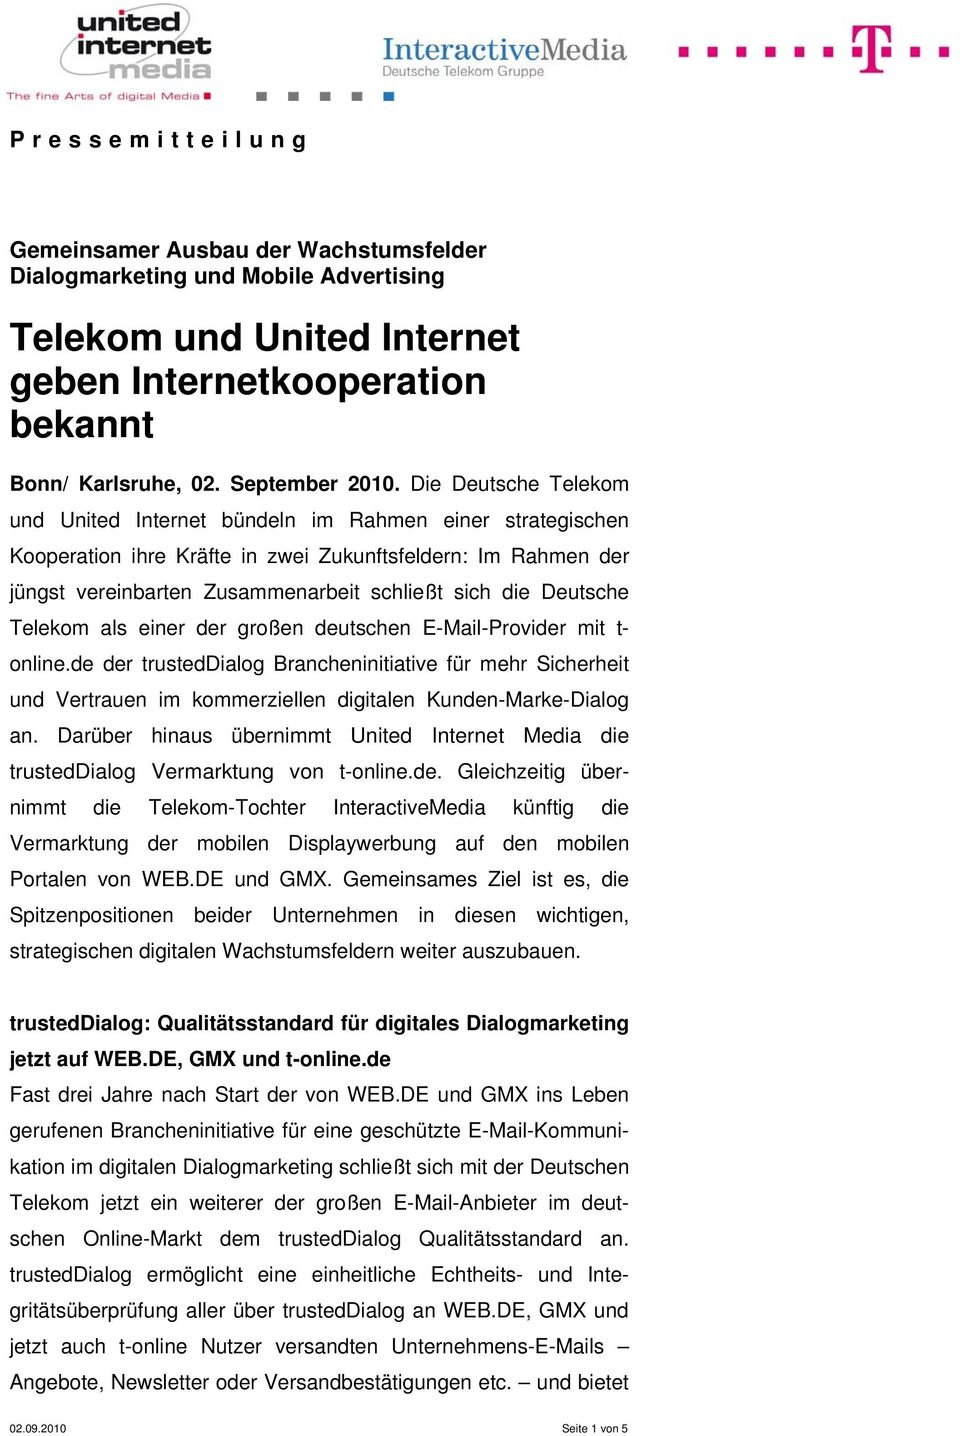 Deutsche Telekom als einer der großen deutschen E-Mail-Provider mit t- online.